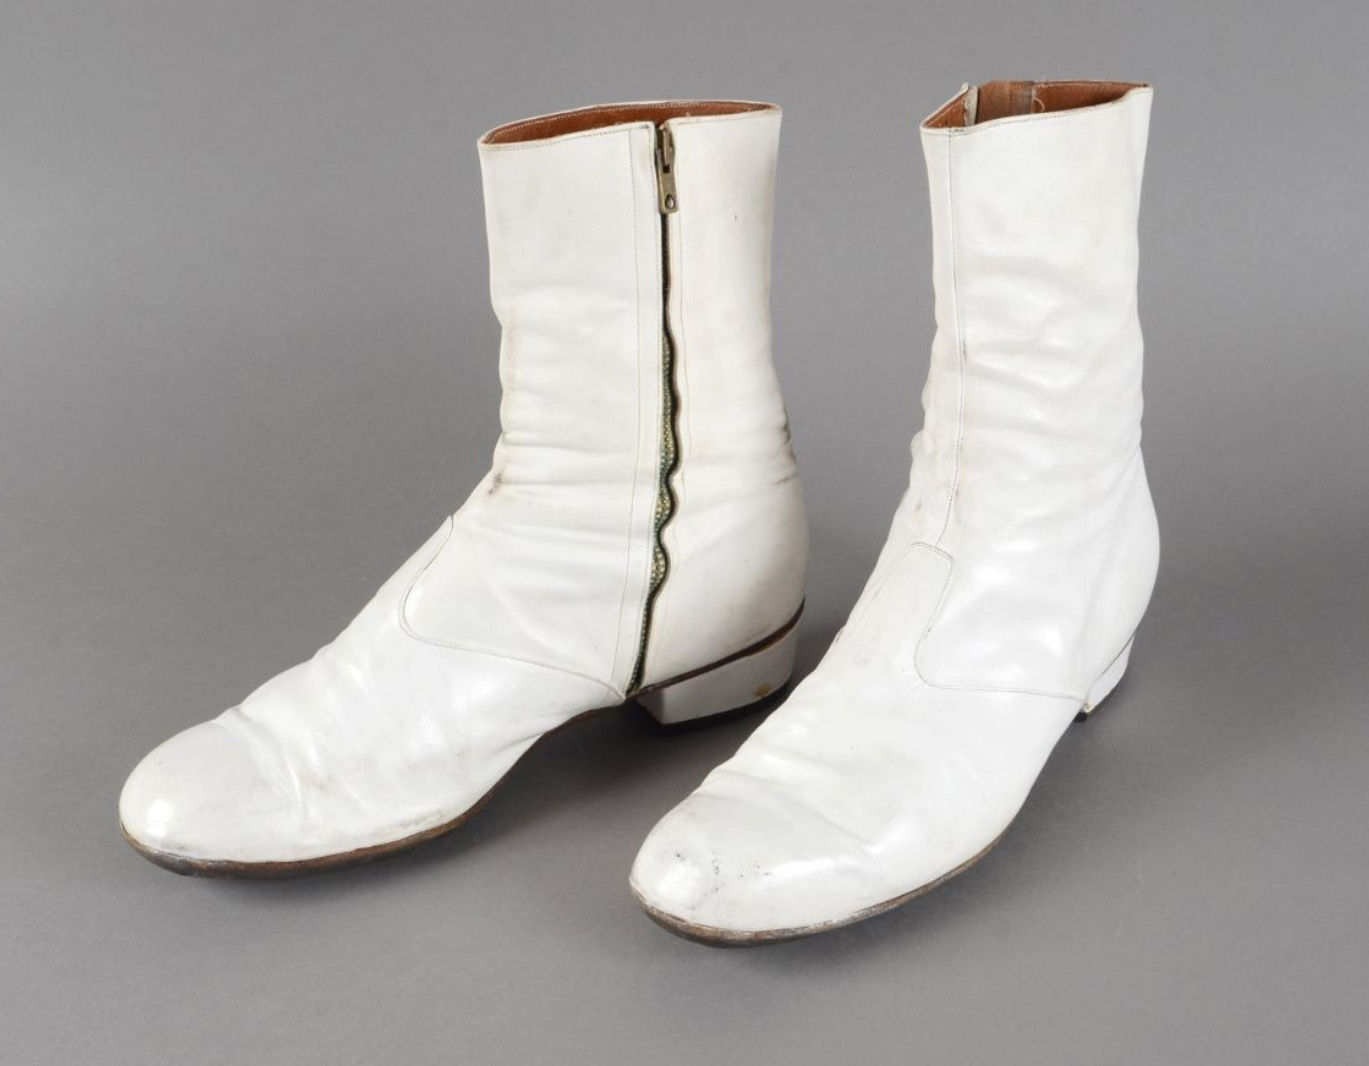 3 125 € Johnny Hallyday, bottines de scène blanches en cuir, utilisées lors de la tournée 1976, provenance : succession Lulu. Drouot, 19 mars 2016. Co